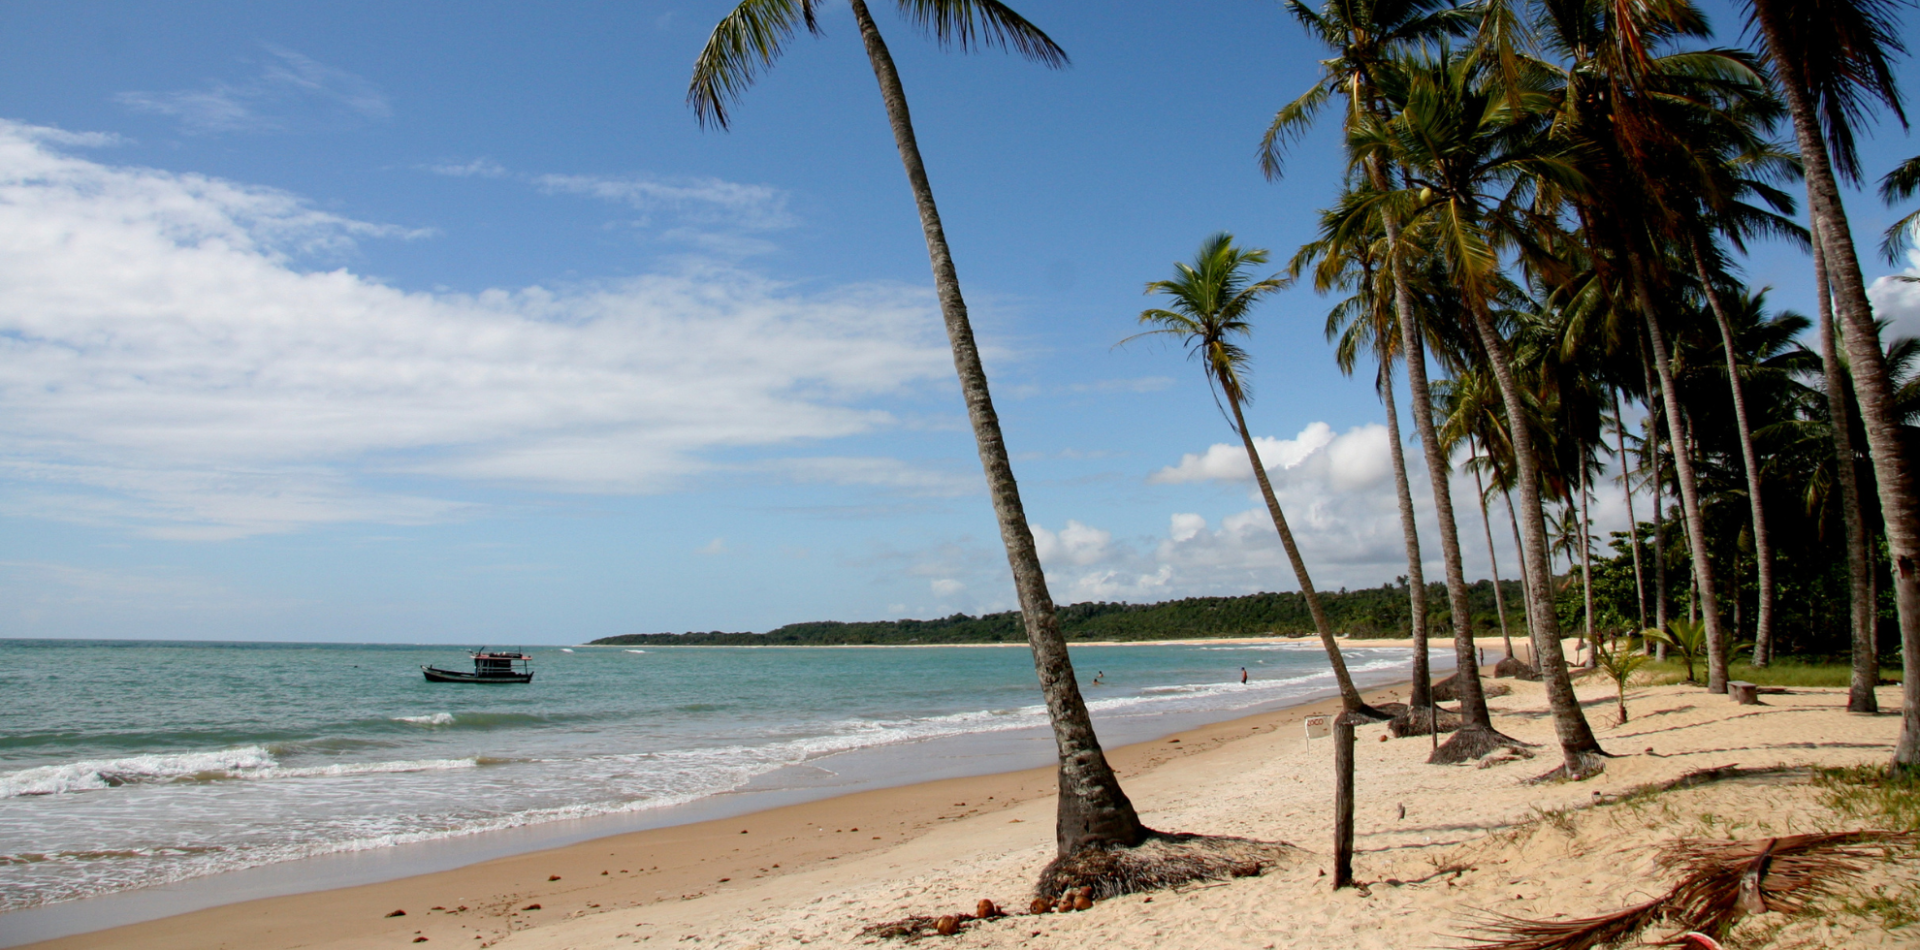 Praia paradisiaca com mar azul e coqueiros na areia